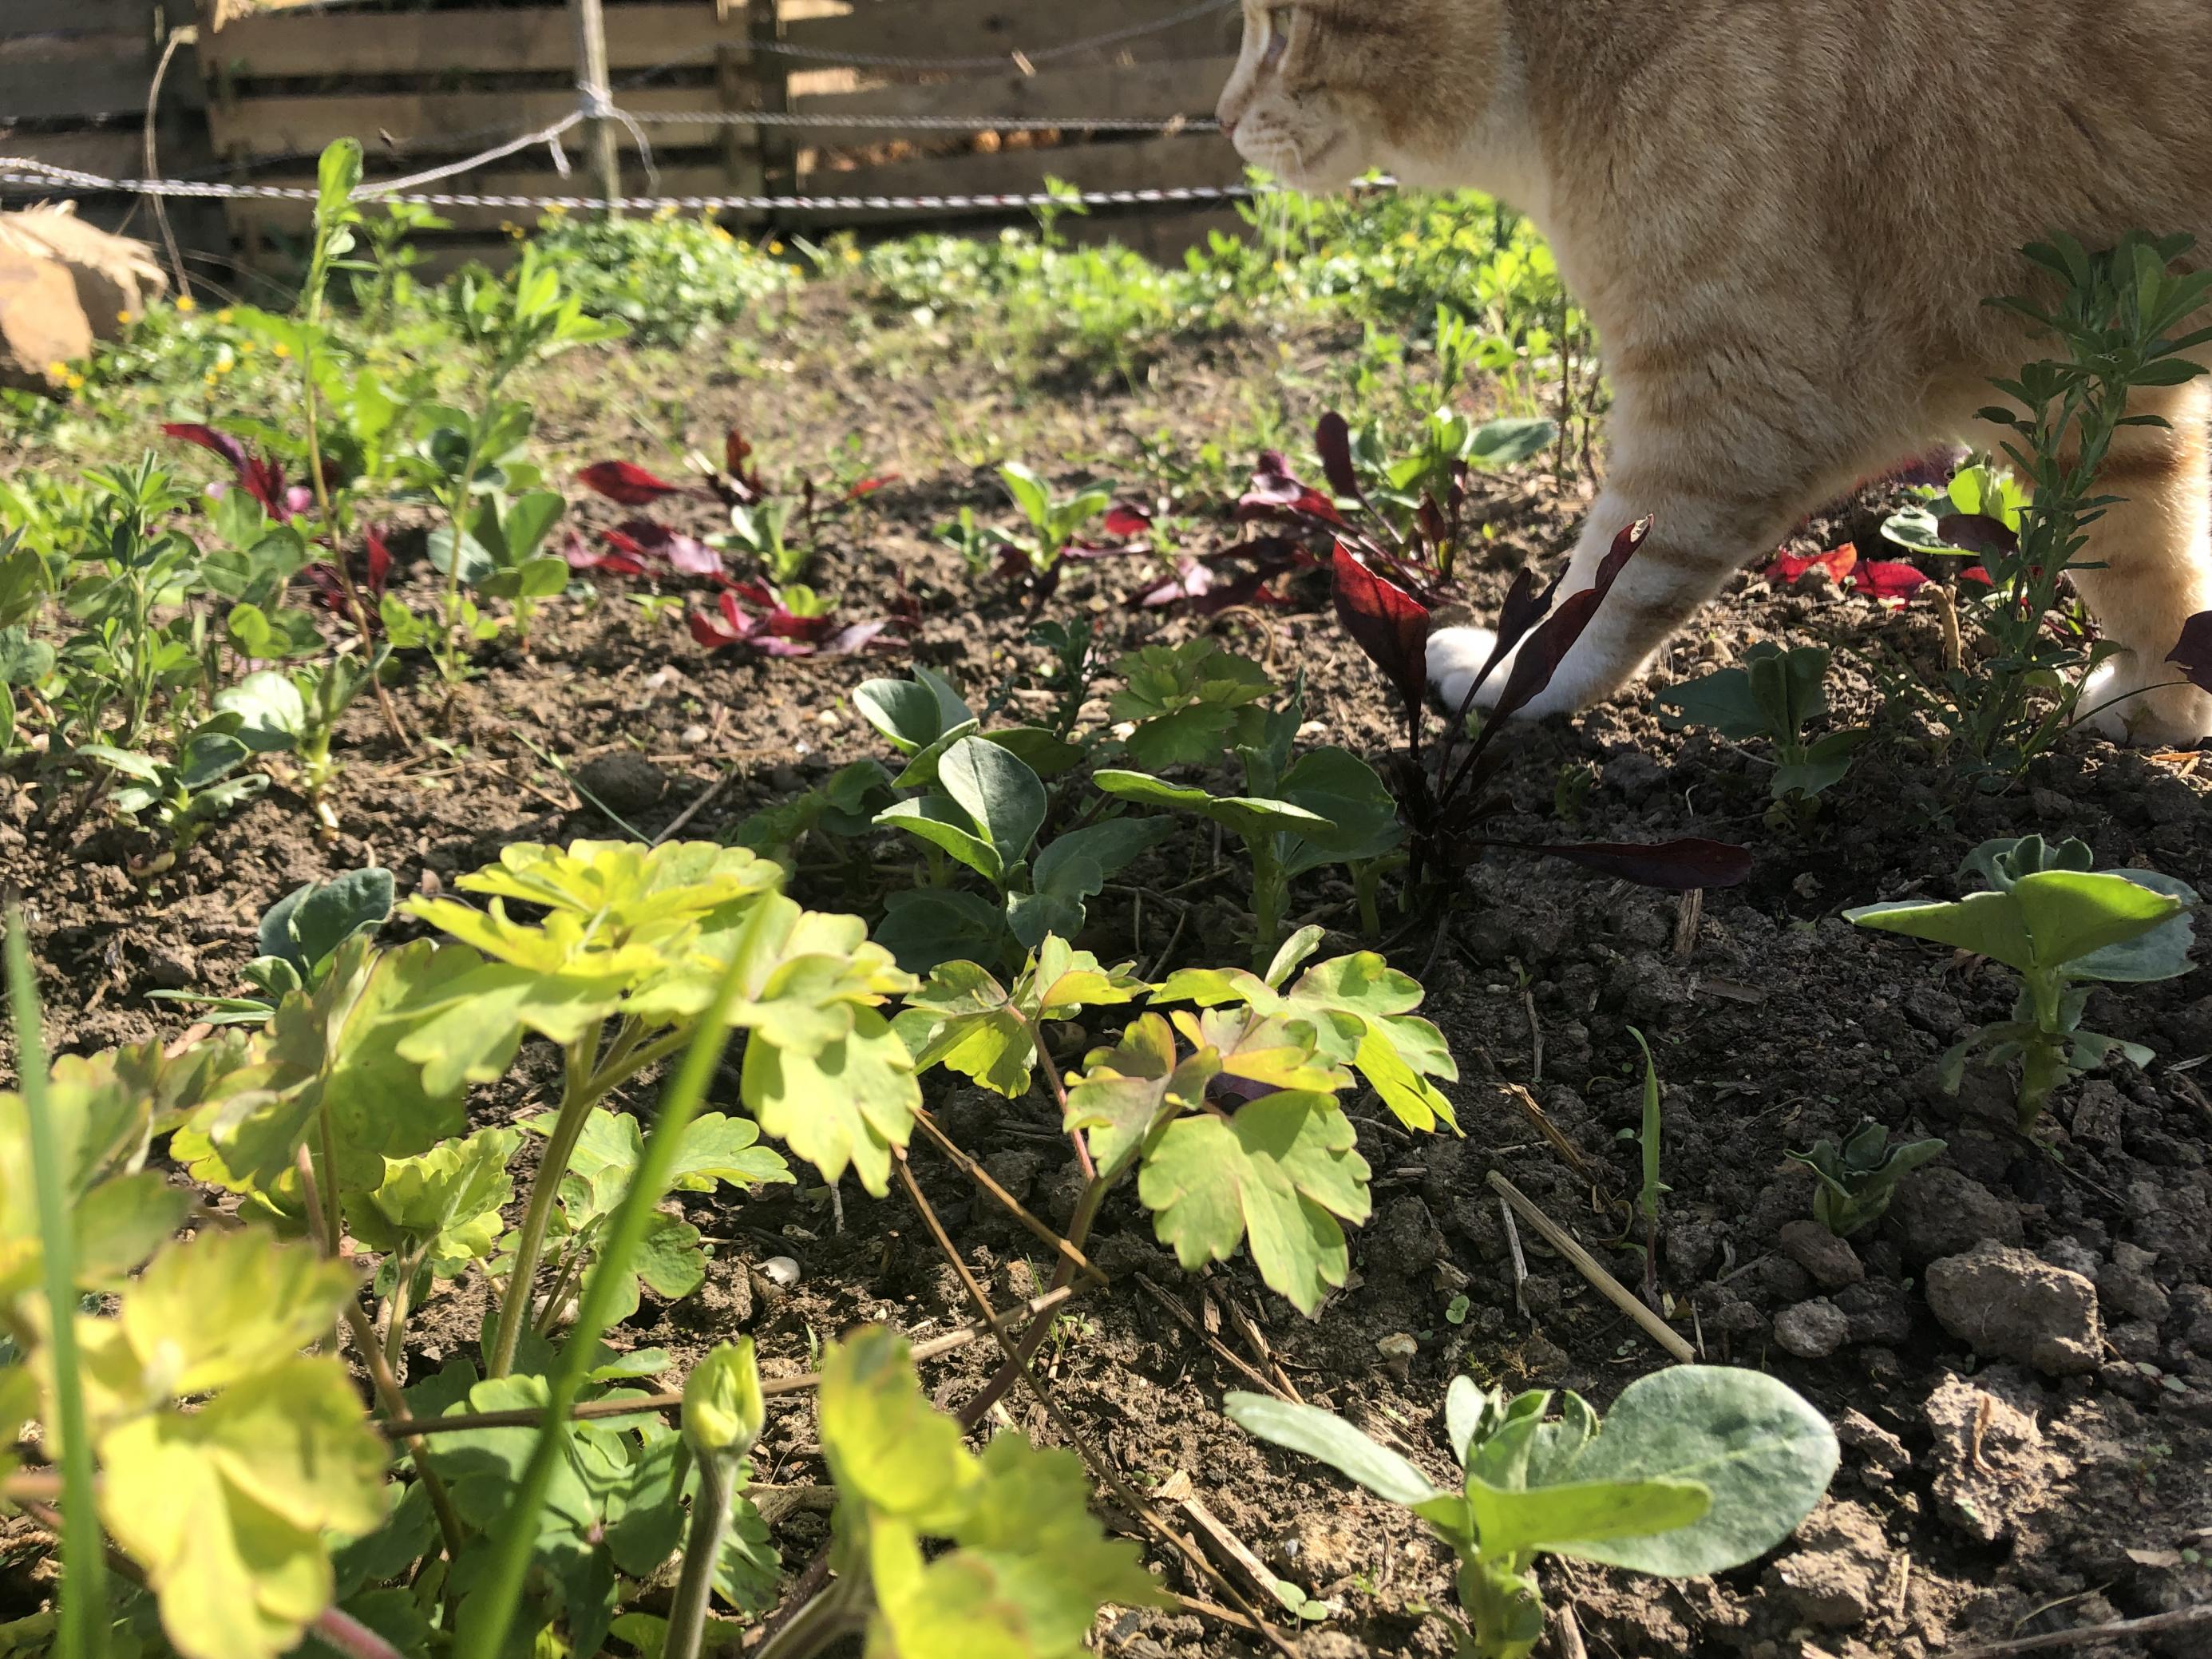 Angeblich mögen Schnecken kein rotes Gemüse. Der Katze ist es egal.